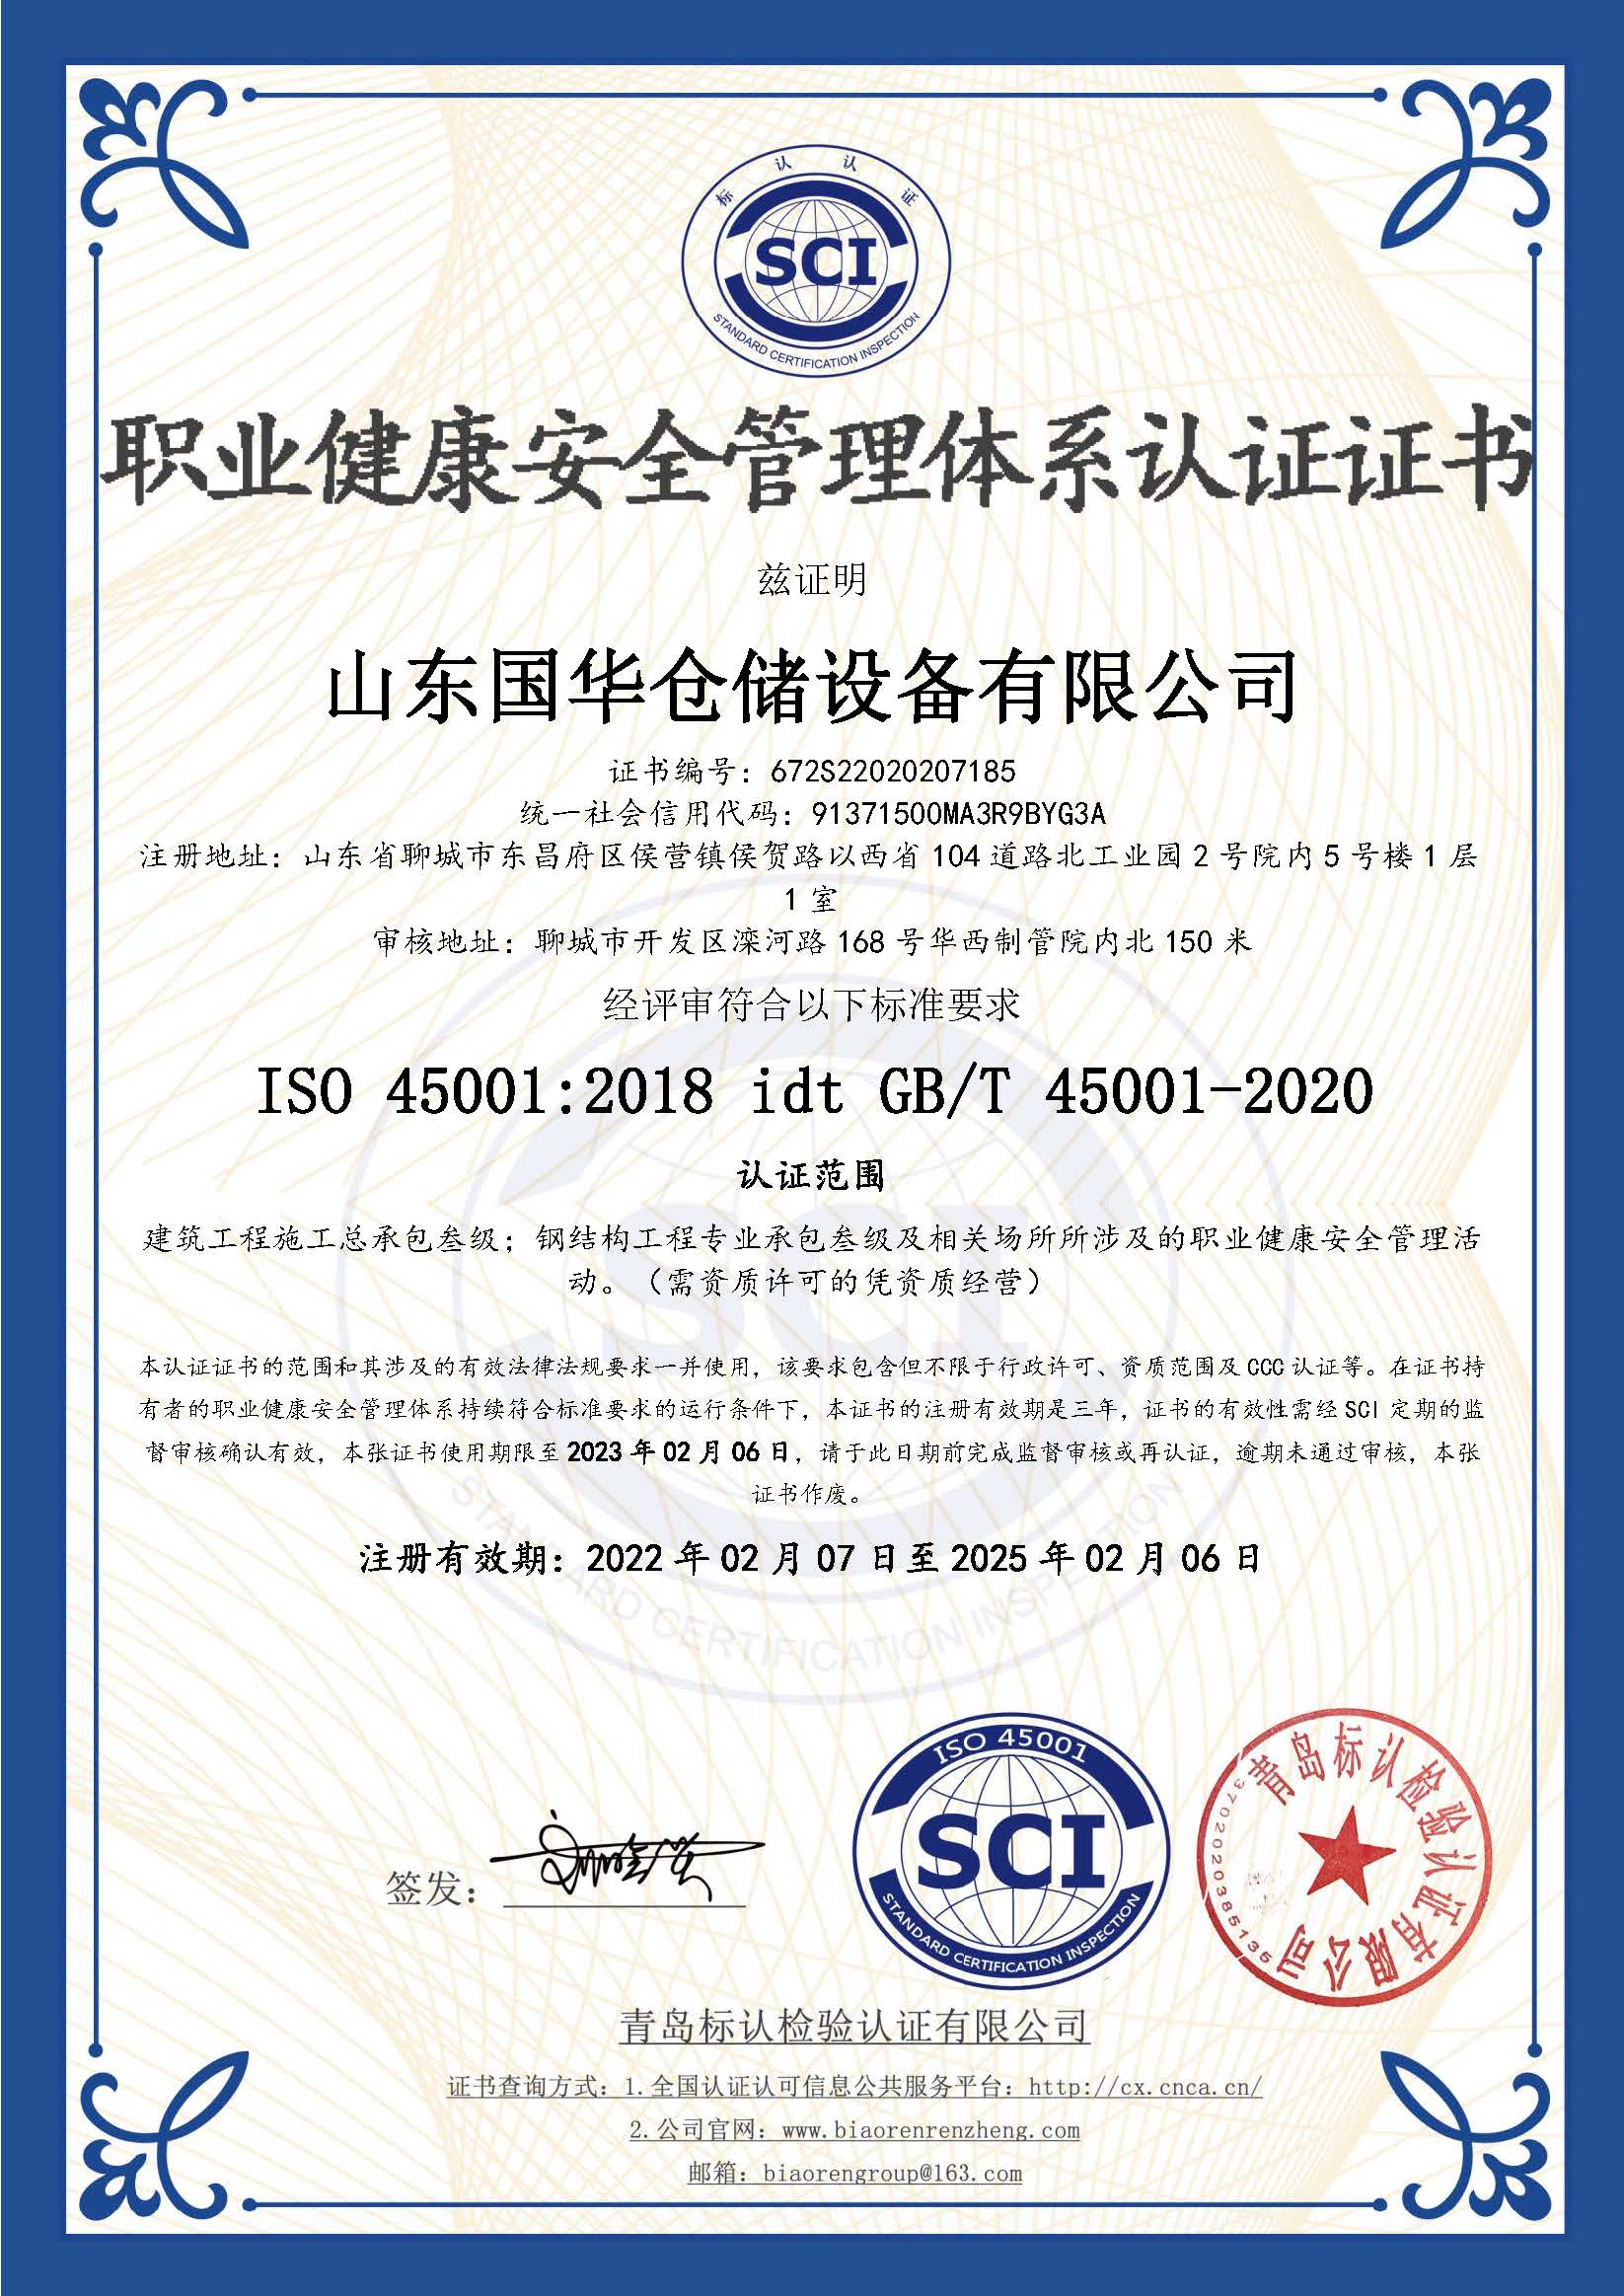 柳州钢板仓职业健康安全管理体系认证证书